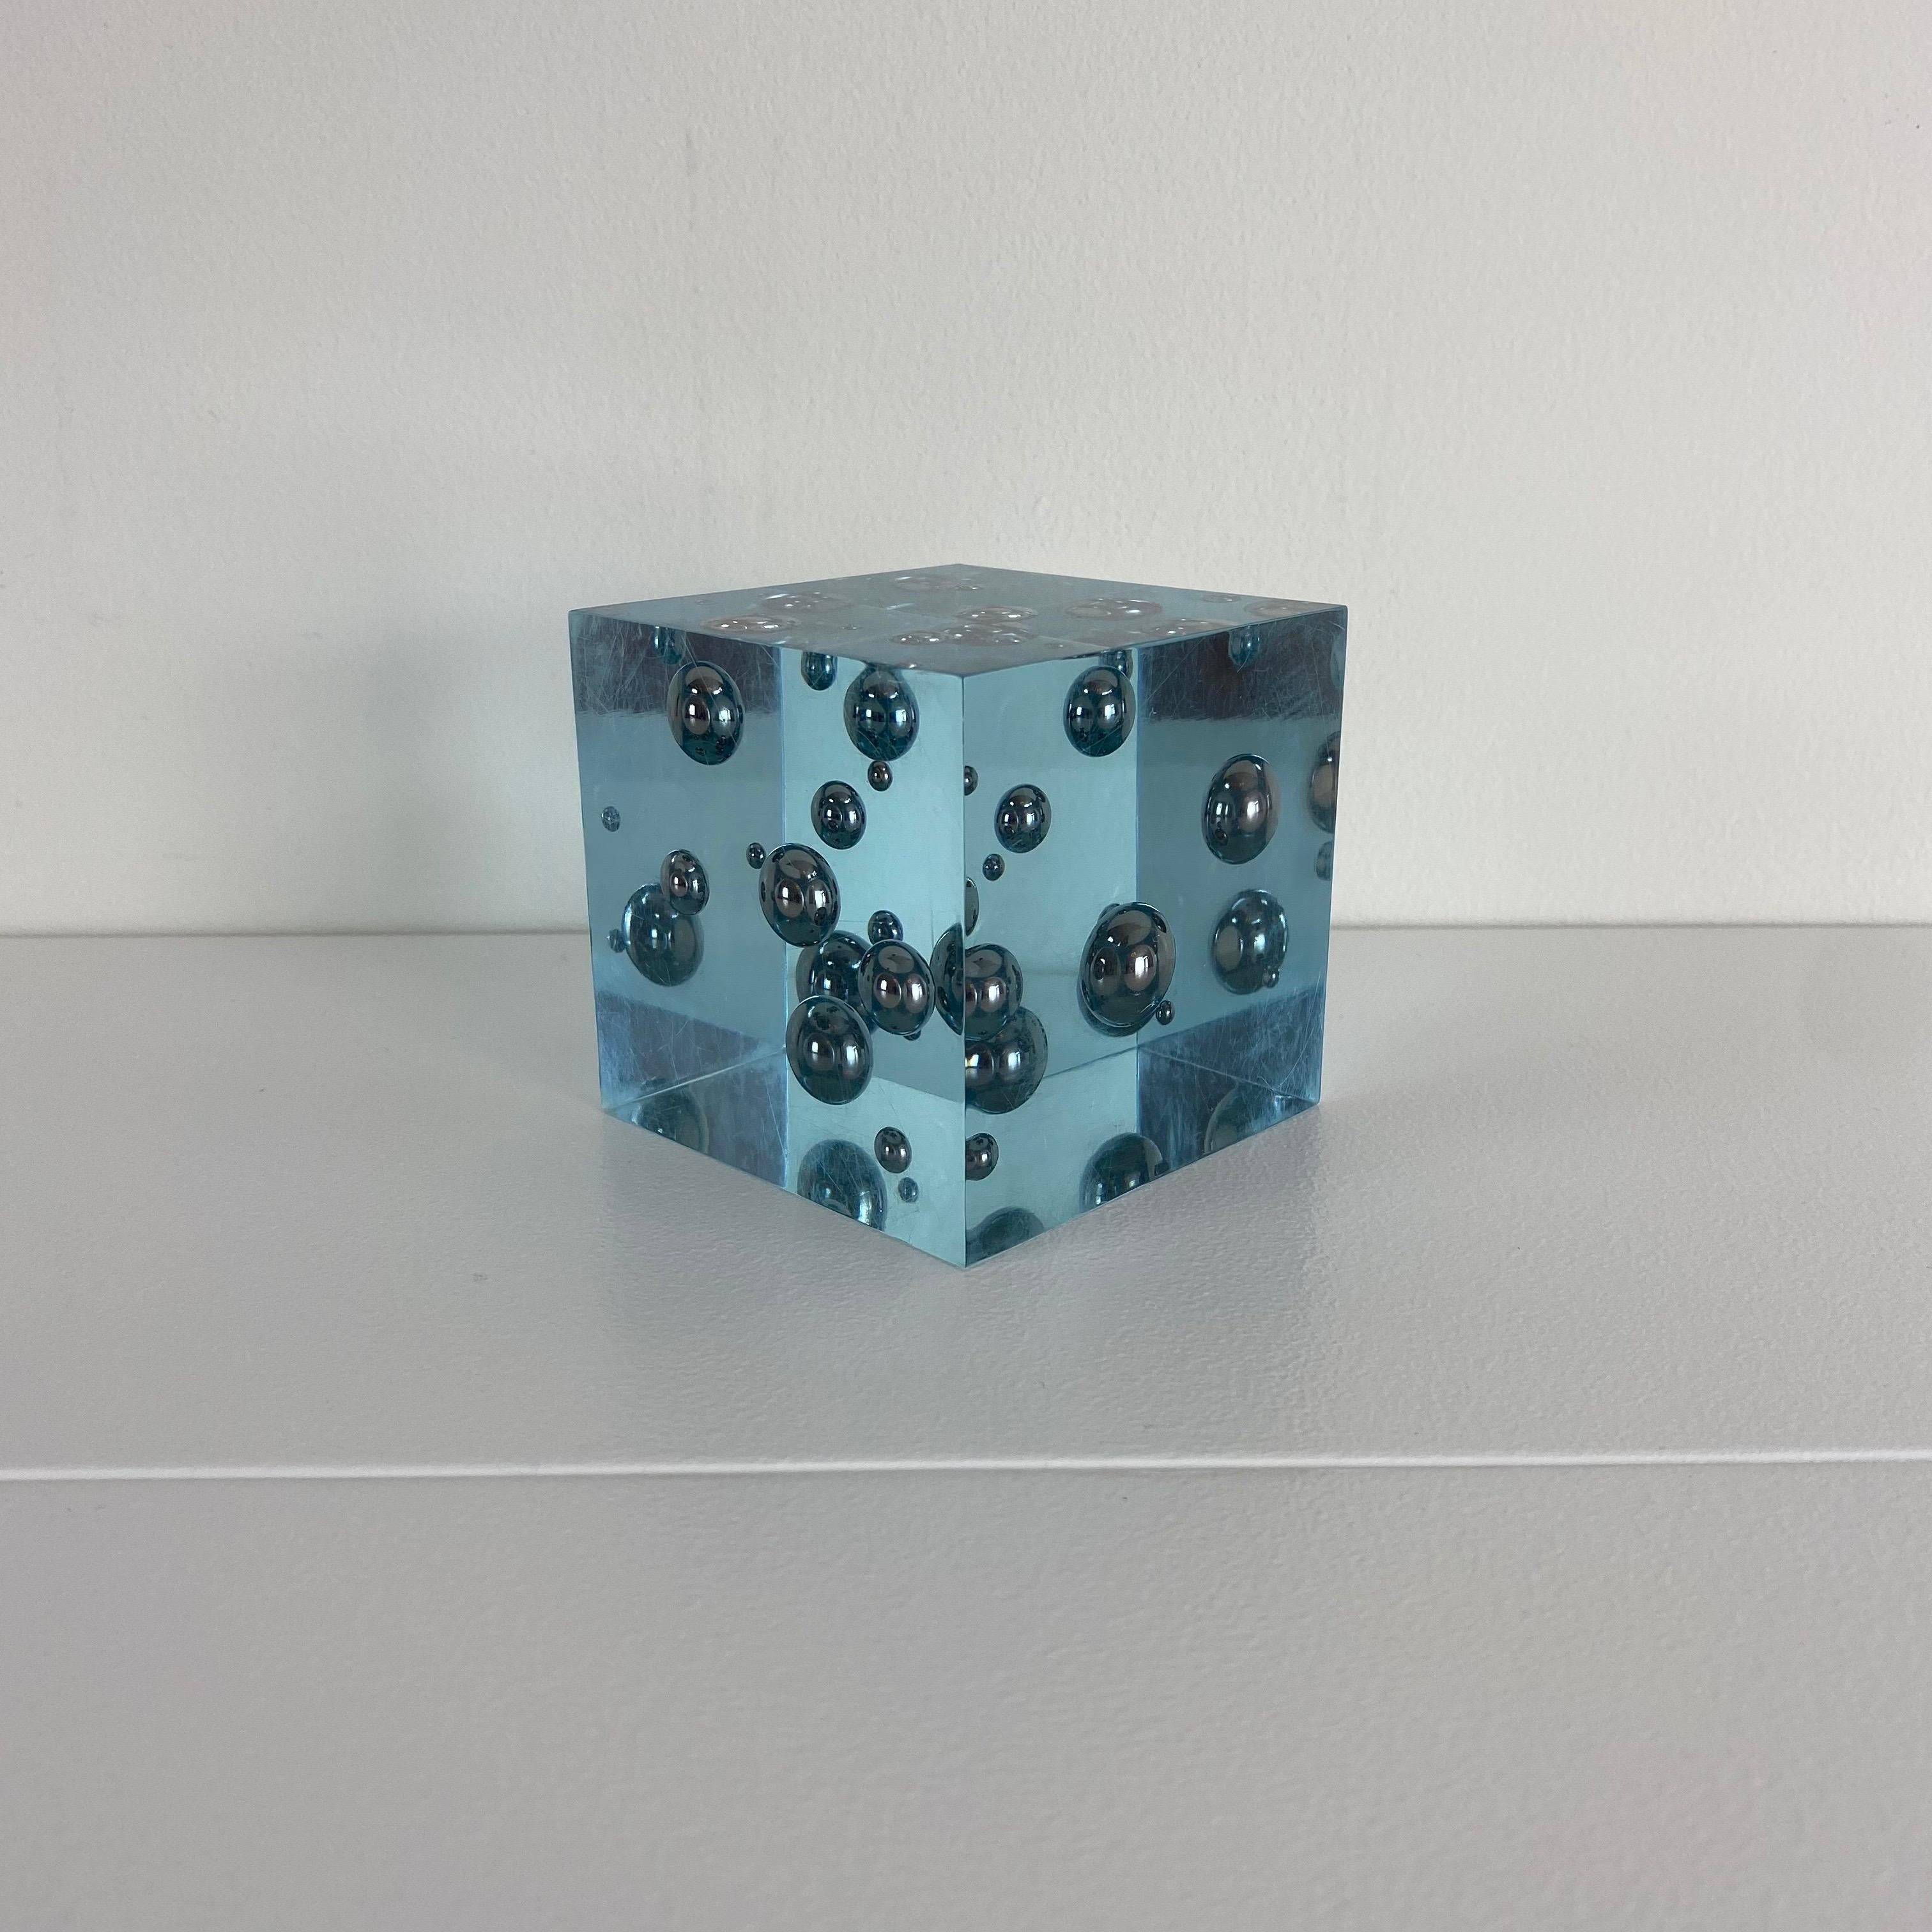 Vieille sculpture cubique en lucite bleue avec des billes d'acier suspendues. Dans le style d'Enzo Mari.